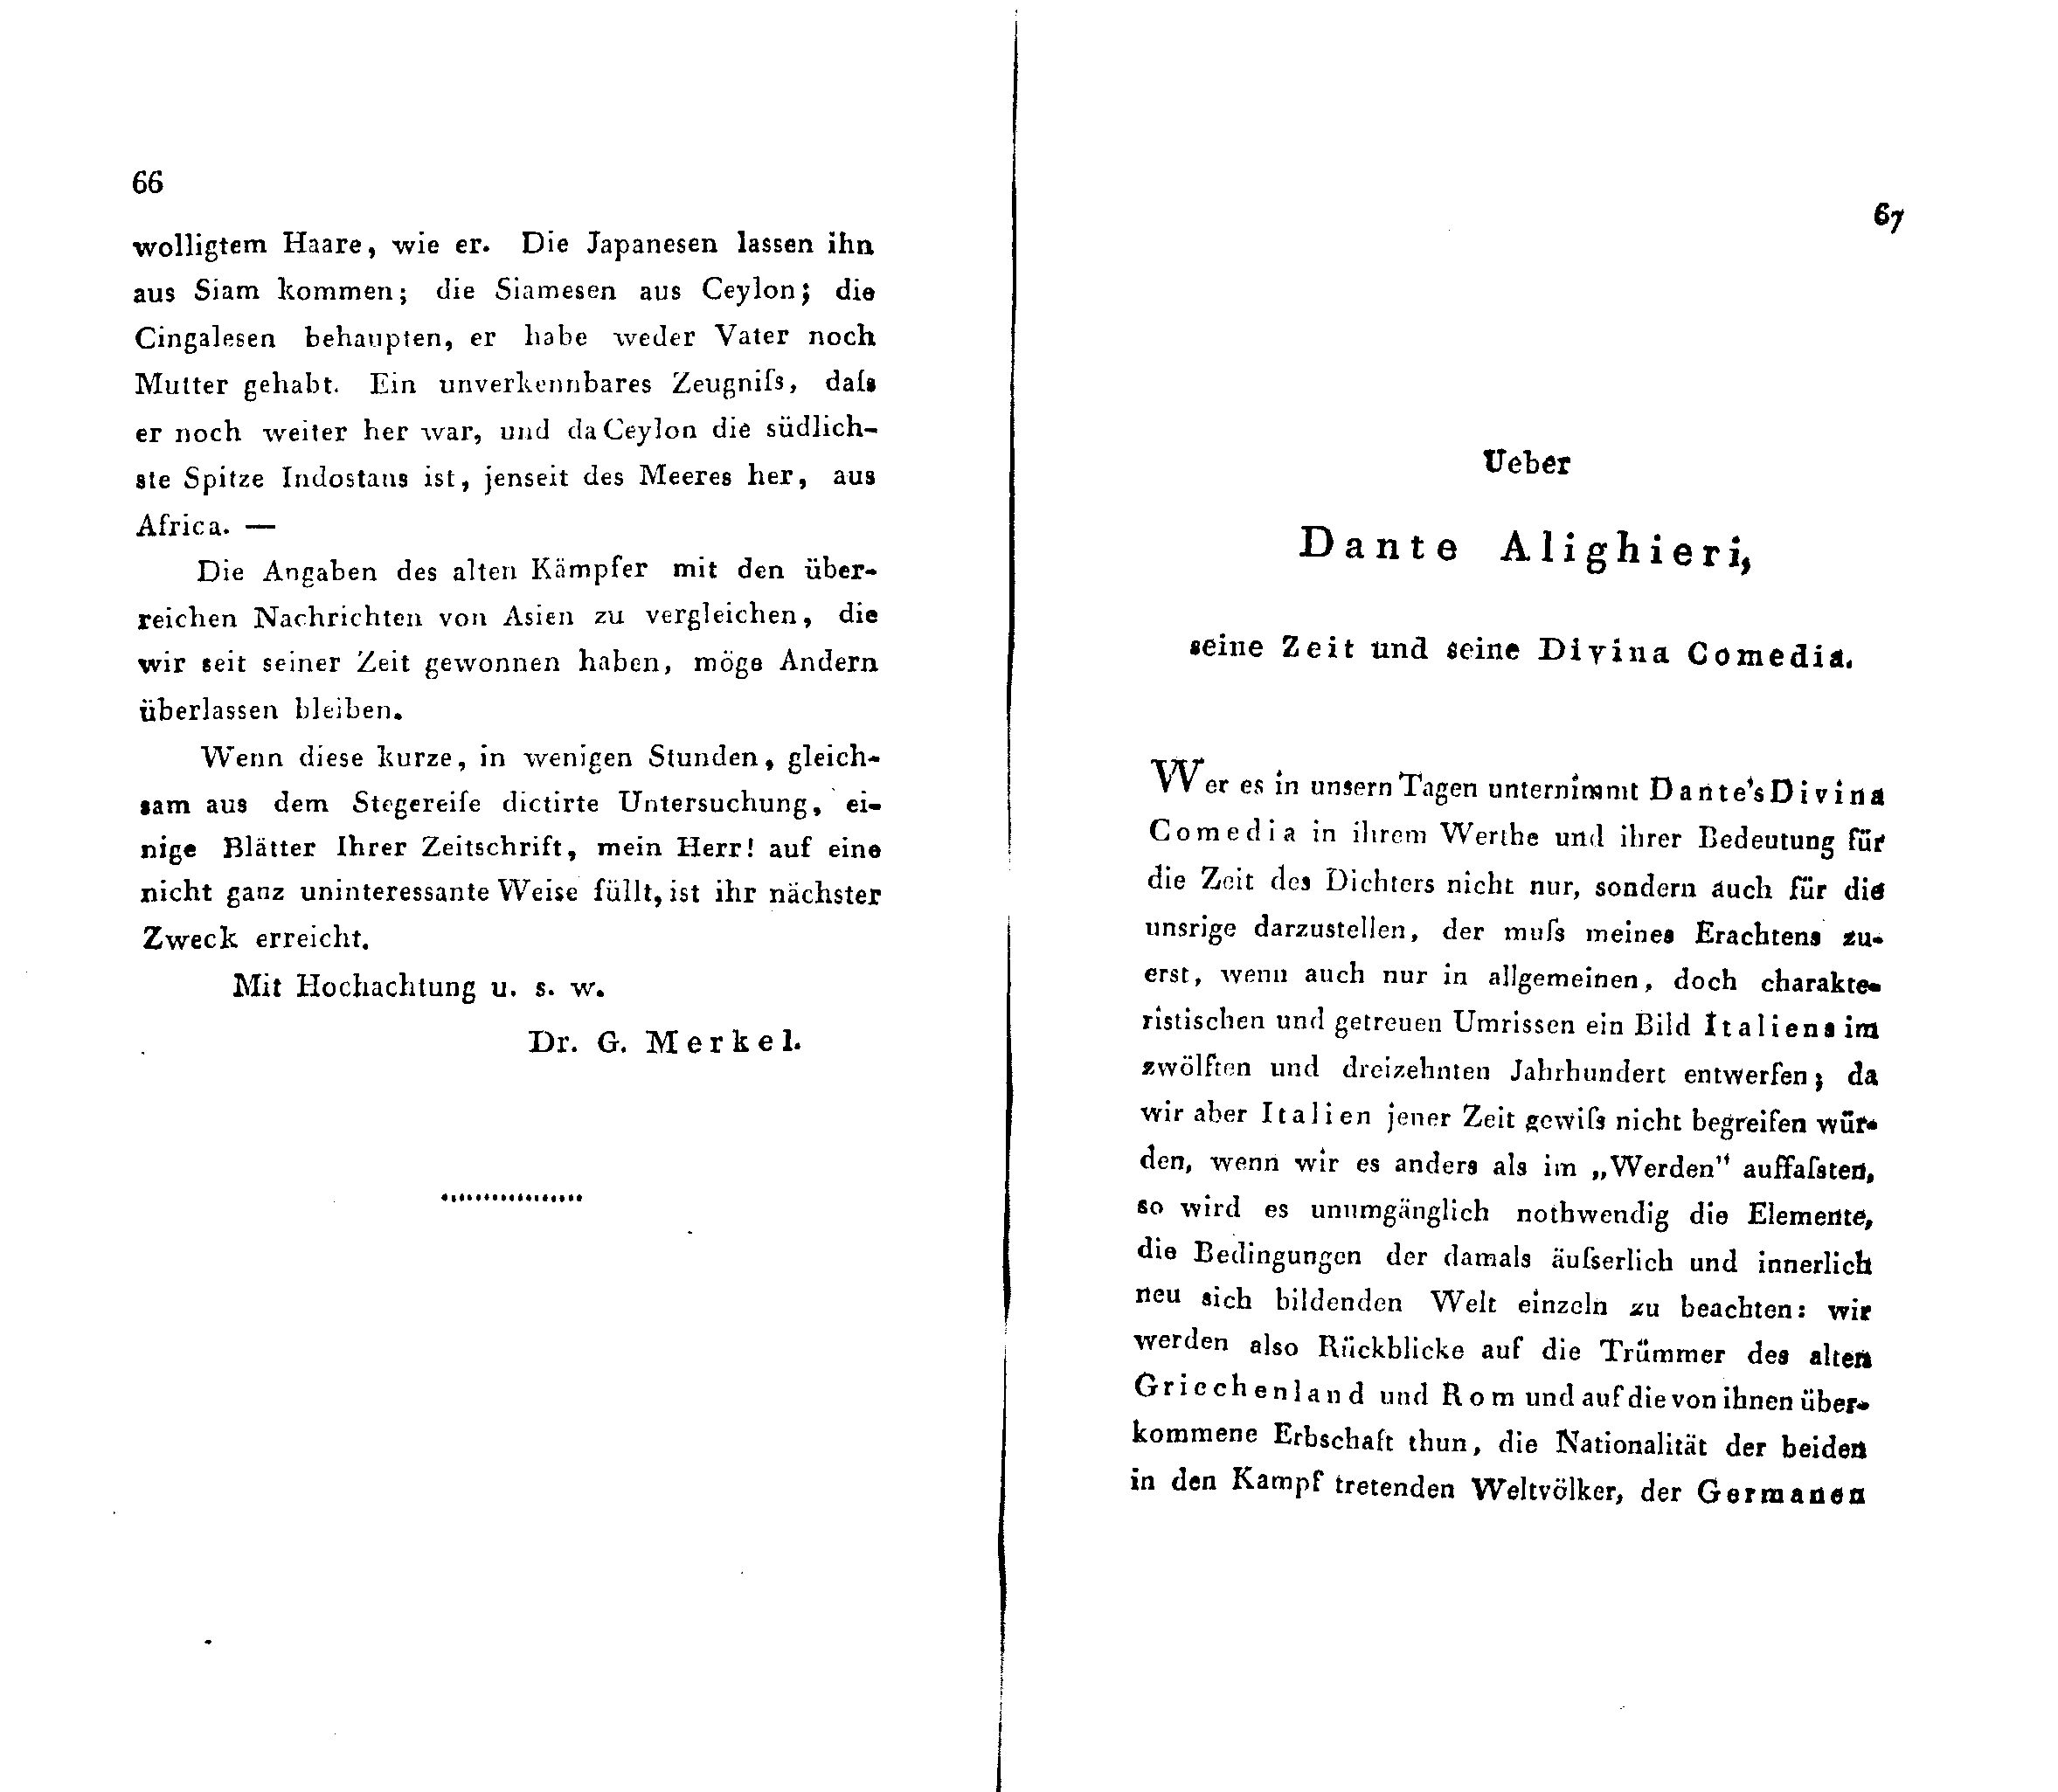 Ueber Dante Alighieri, seine Zeit und seine Divina Comedia [1] (1824) | 1. (66-67) Haupttext